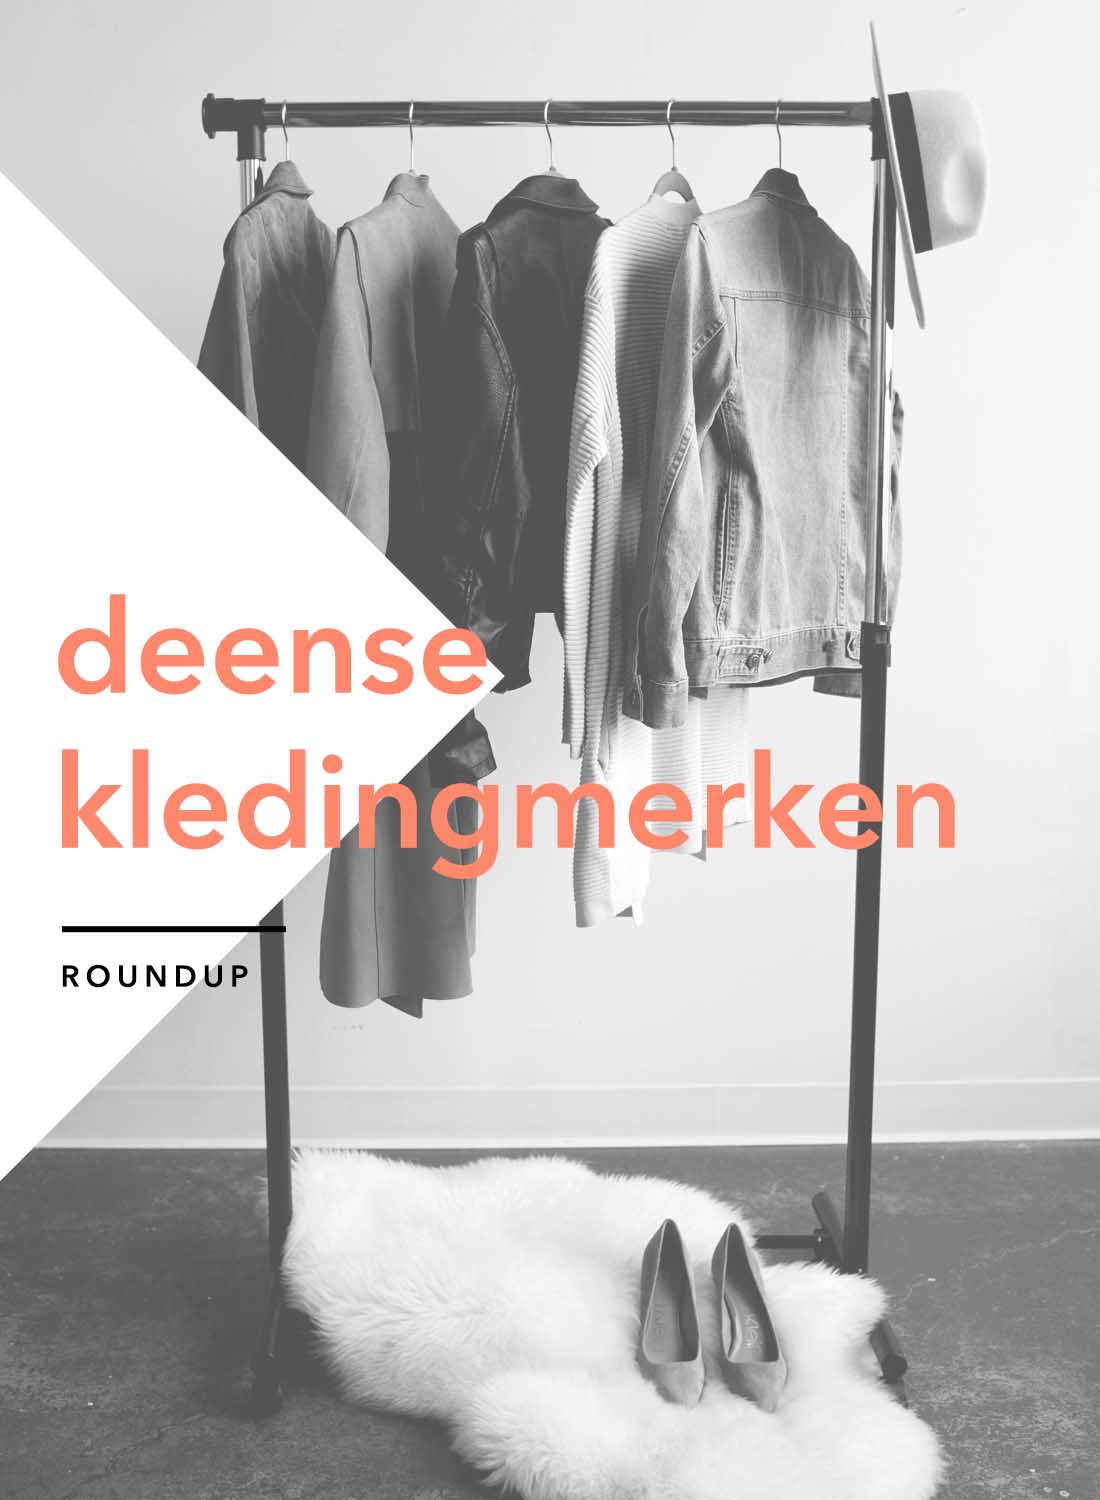 10 Deense kleding merken Mode uit Kopenhagen